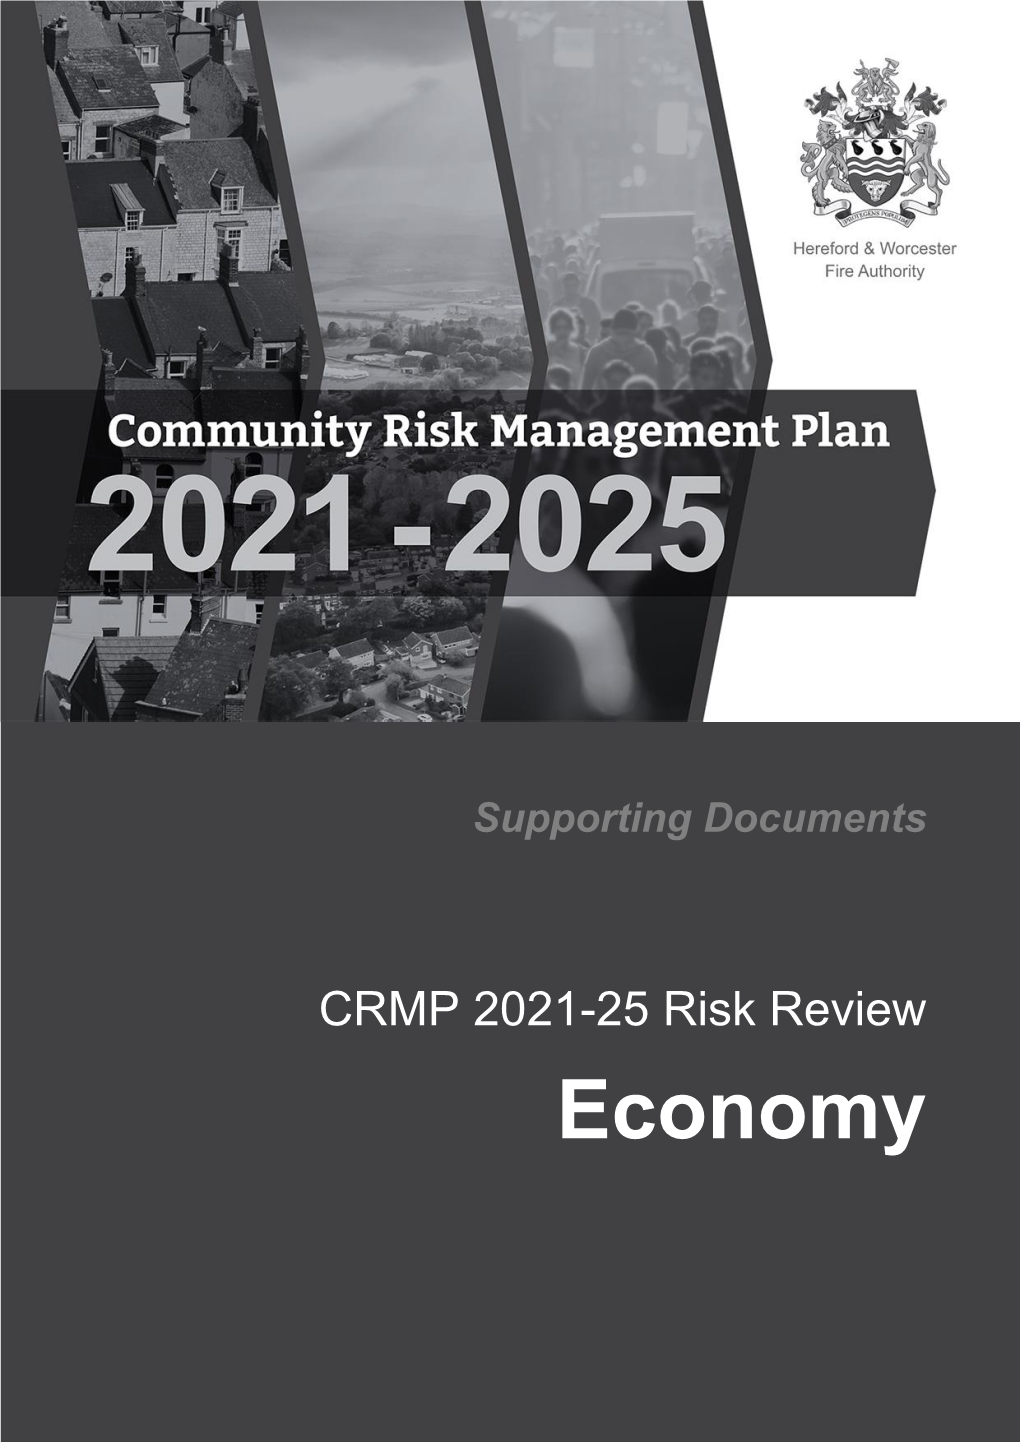 Economy CRMP 2021-25 Risk Review – Economy